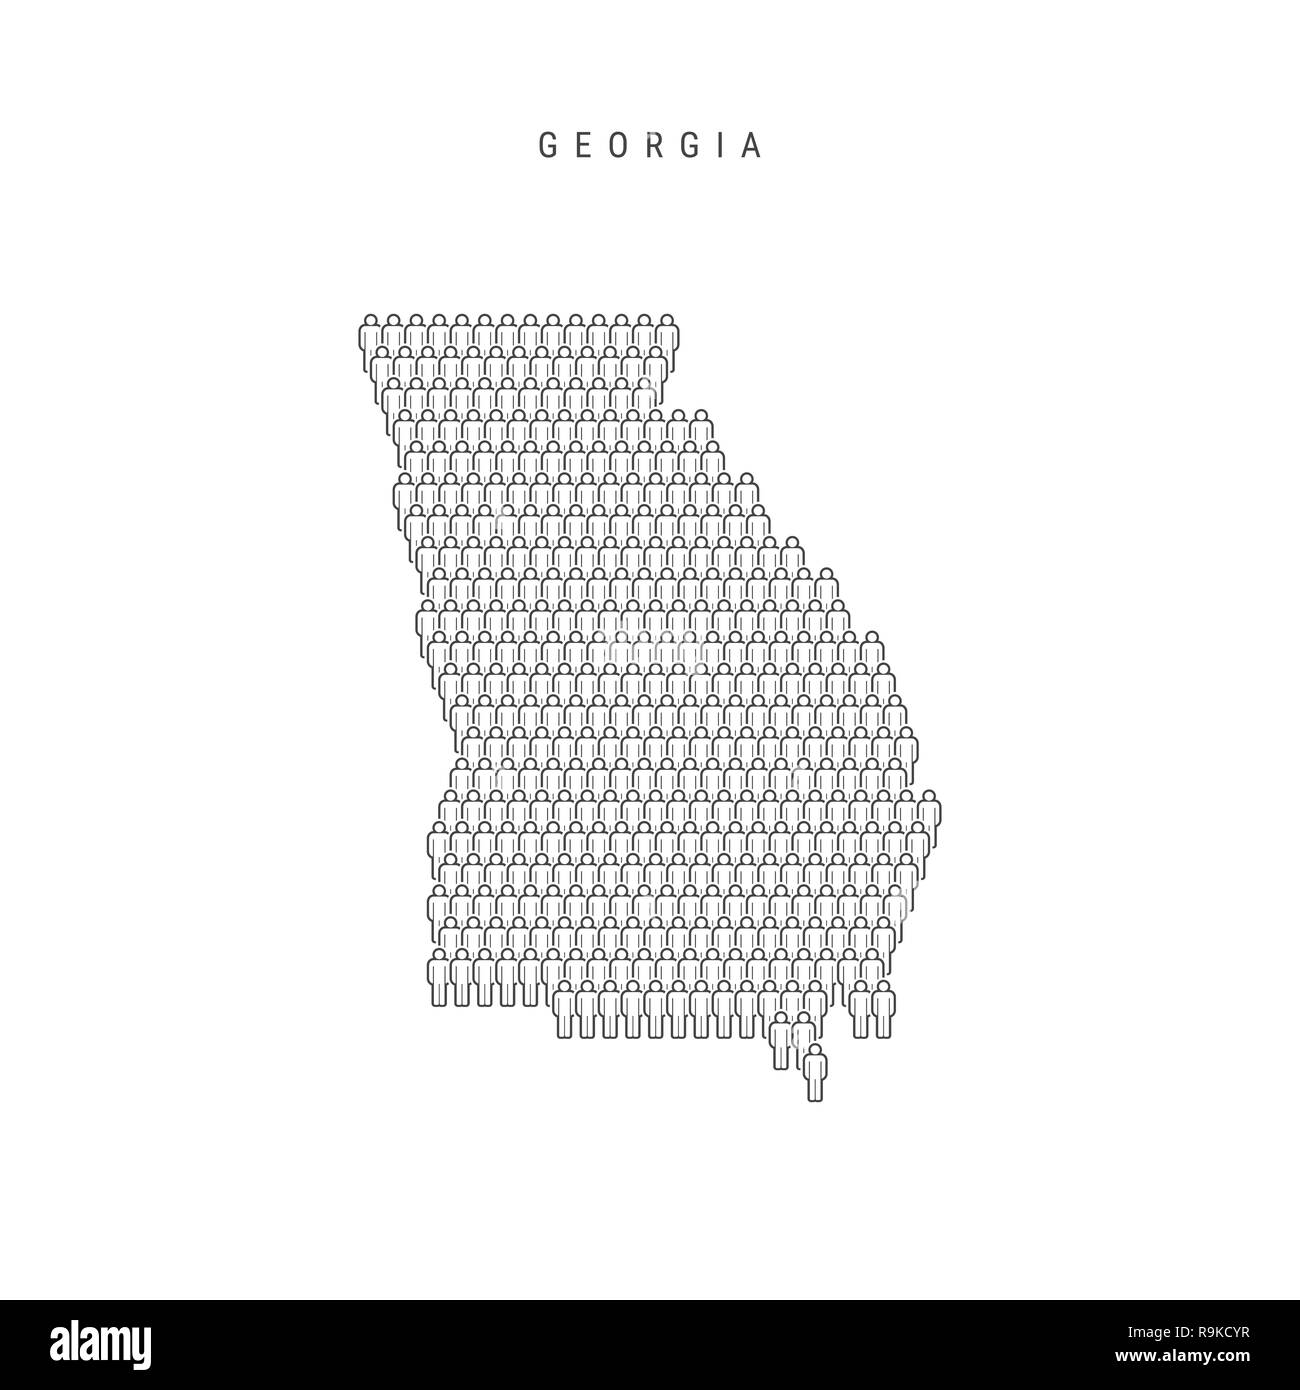 Leute Karte von Georgien, US-Staat. Stilisierte Silhouette, Leute in der Form einer Karte von Georgien. Georgien Bevölkerung. Abbildung isoliert auf Whit Stockfoto